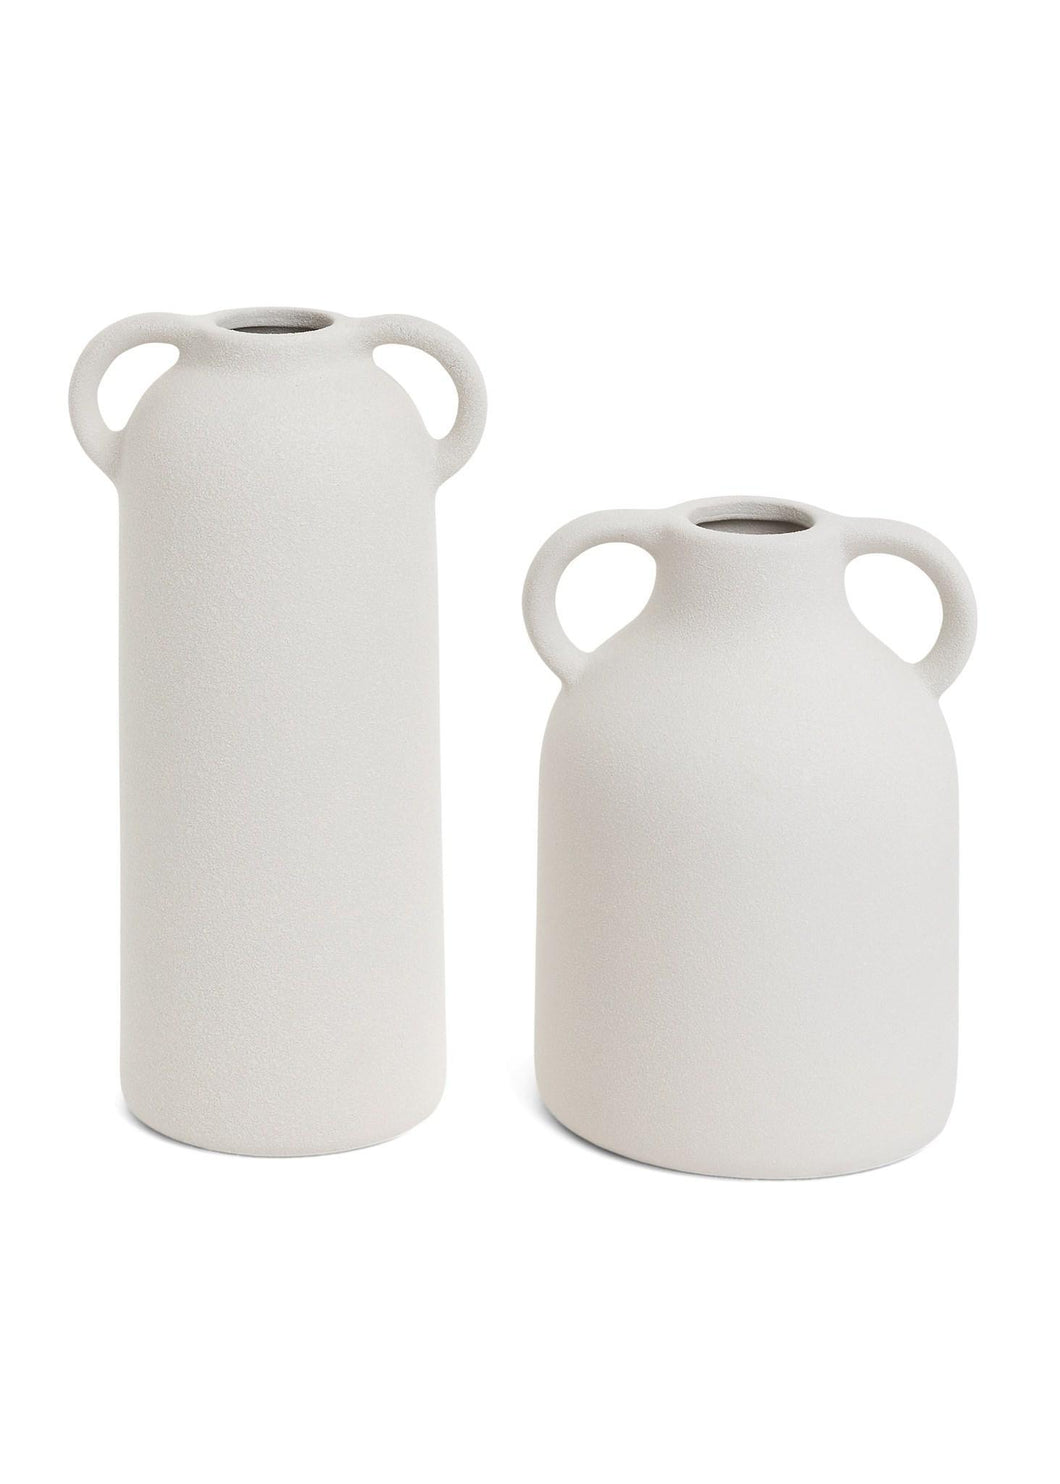 Loxton Textured White Vases